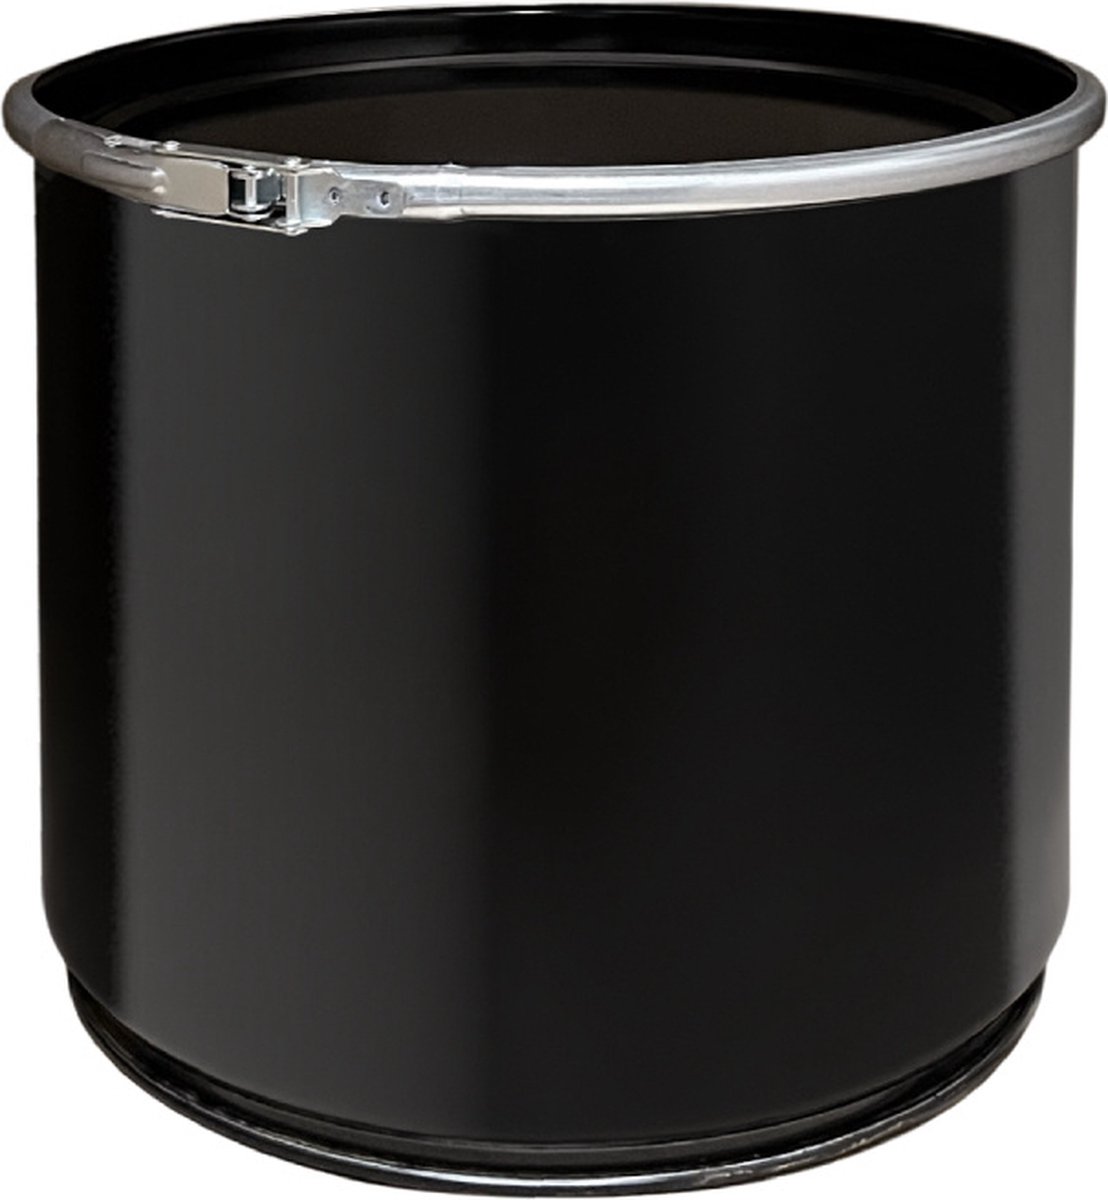 Olievat met deksel - prullenbak - 30 liter - staal - zwart